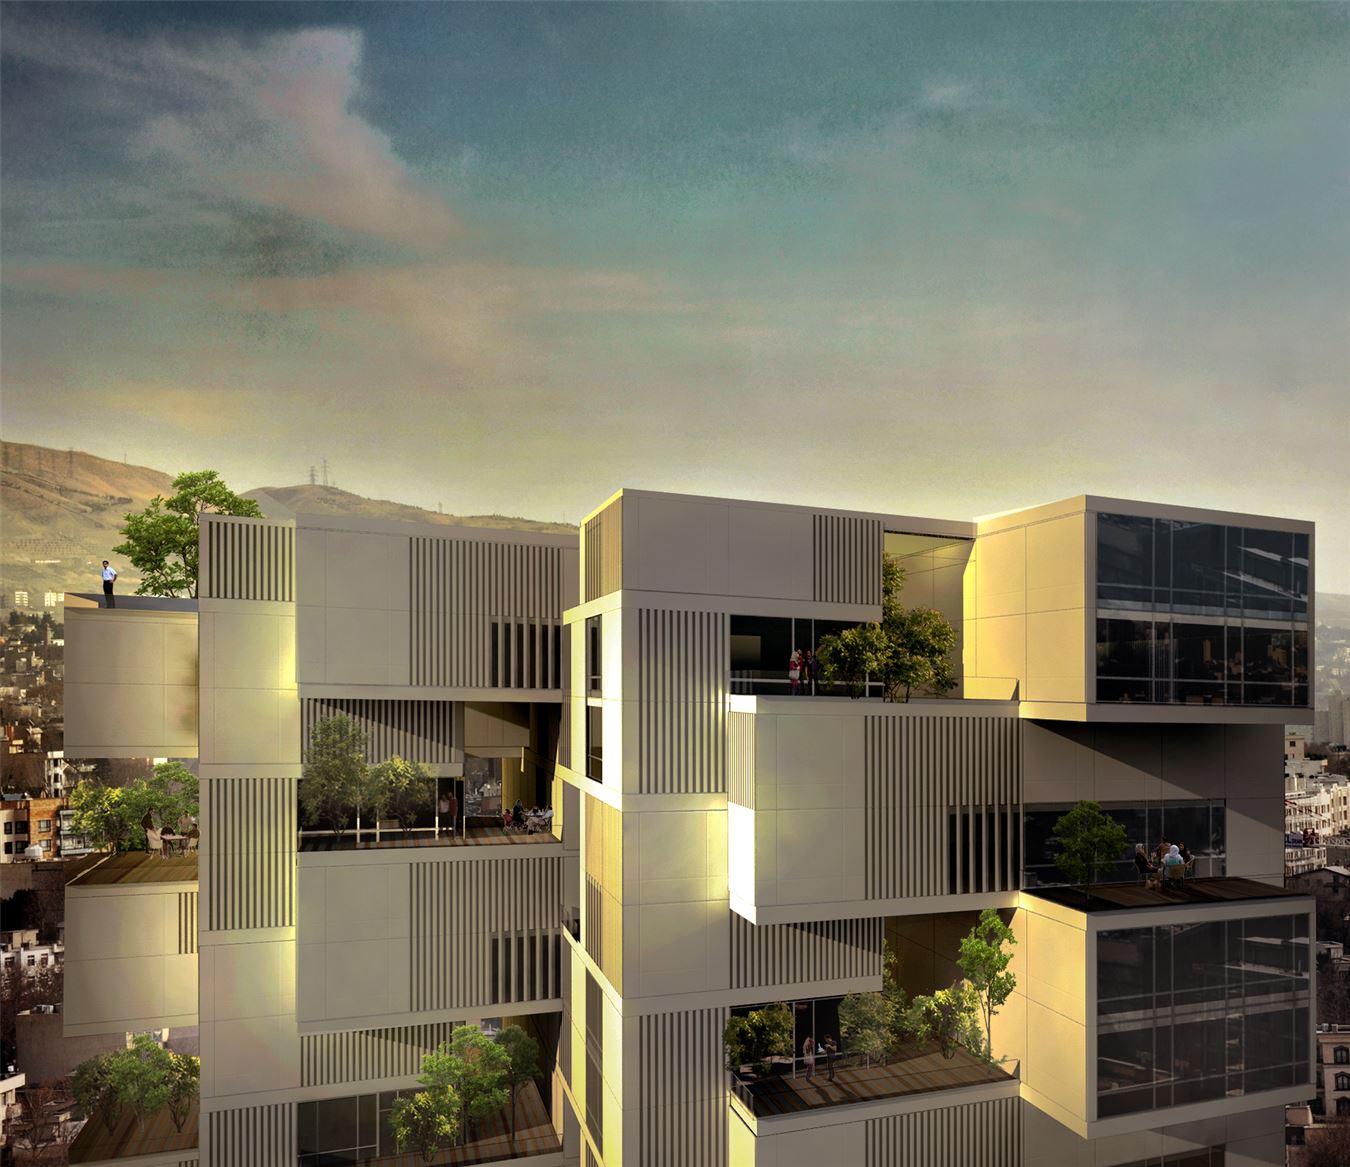  معماری پروژه حیات آپارتمان شماره 9- محمد مجیدی